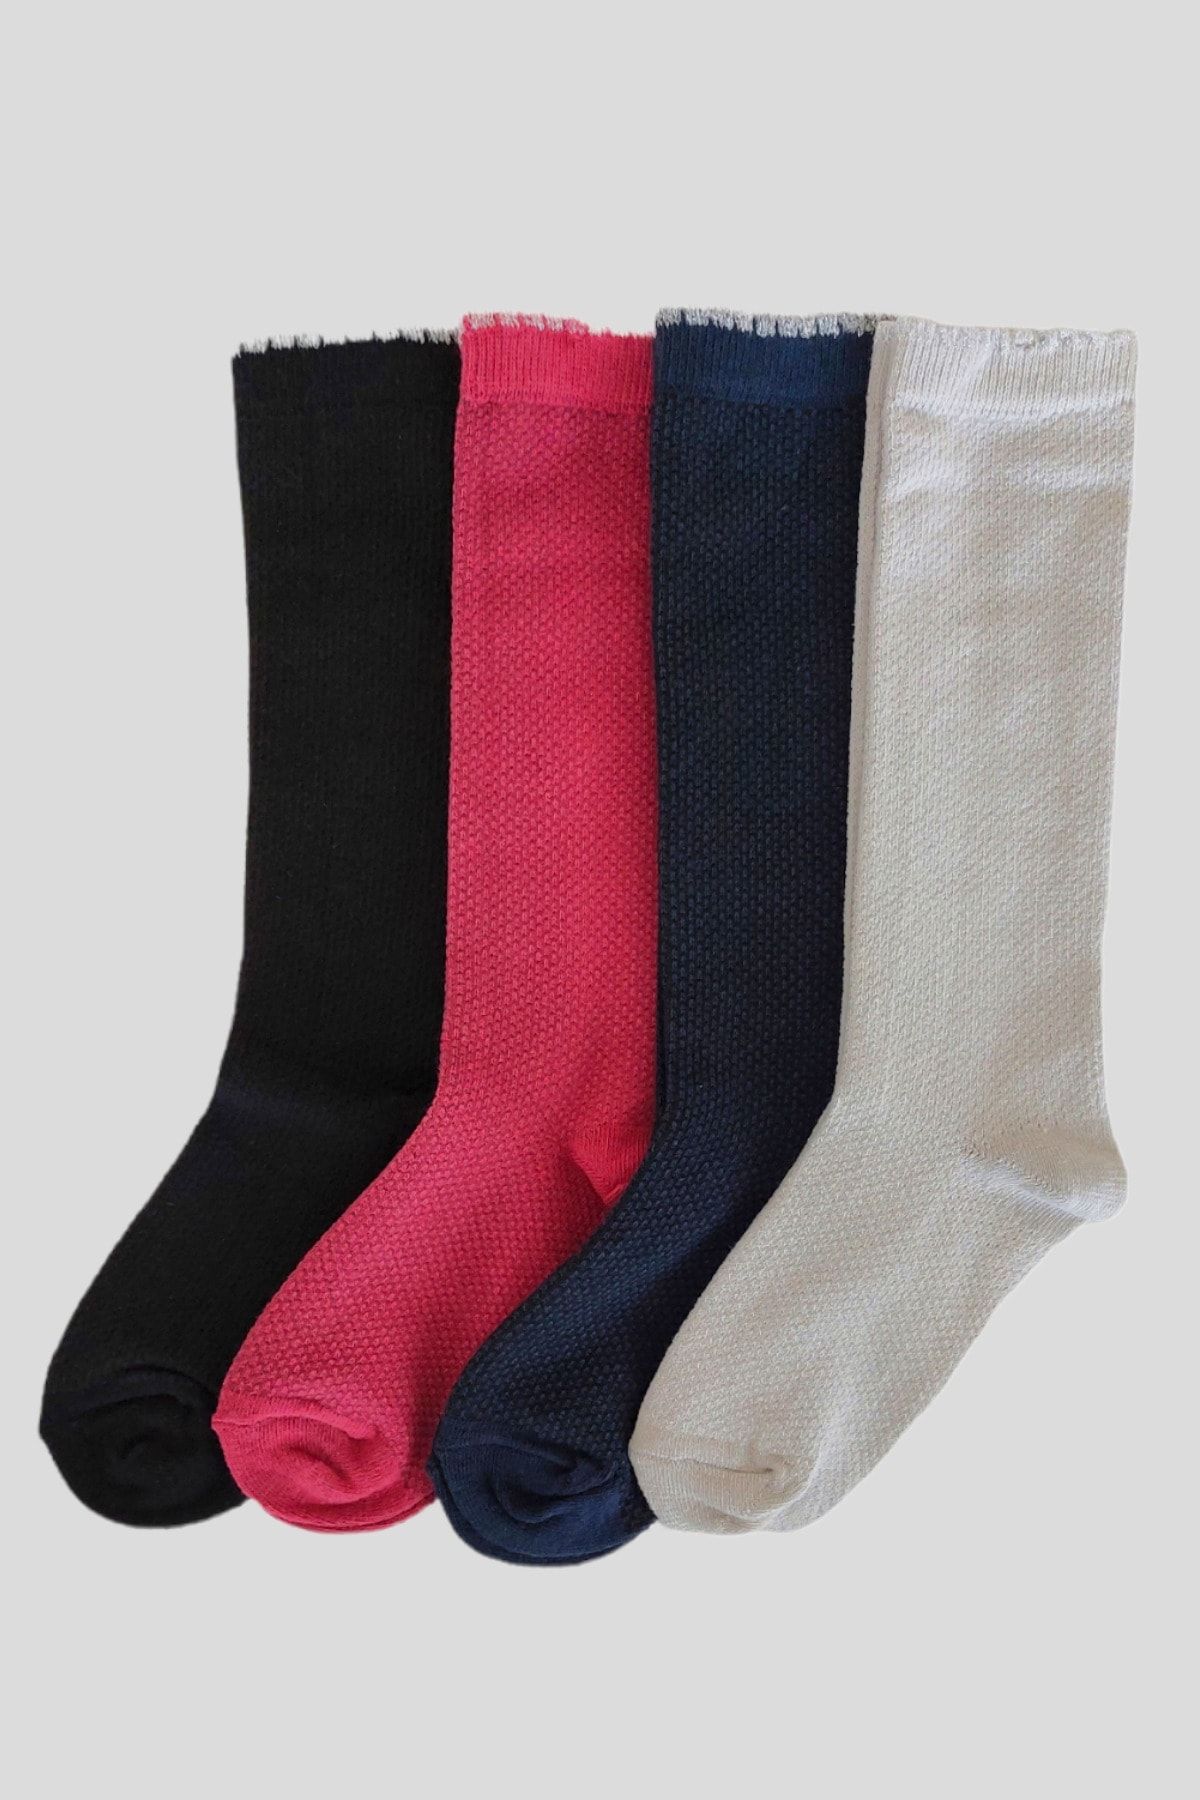 Ollero Çocuk Diz Altı Çorap 4 Çift Siyah Bordo Lacivert Taş